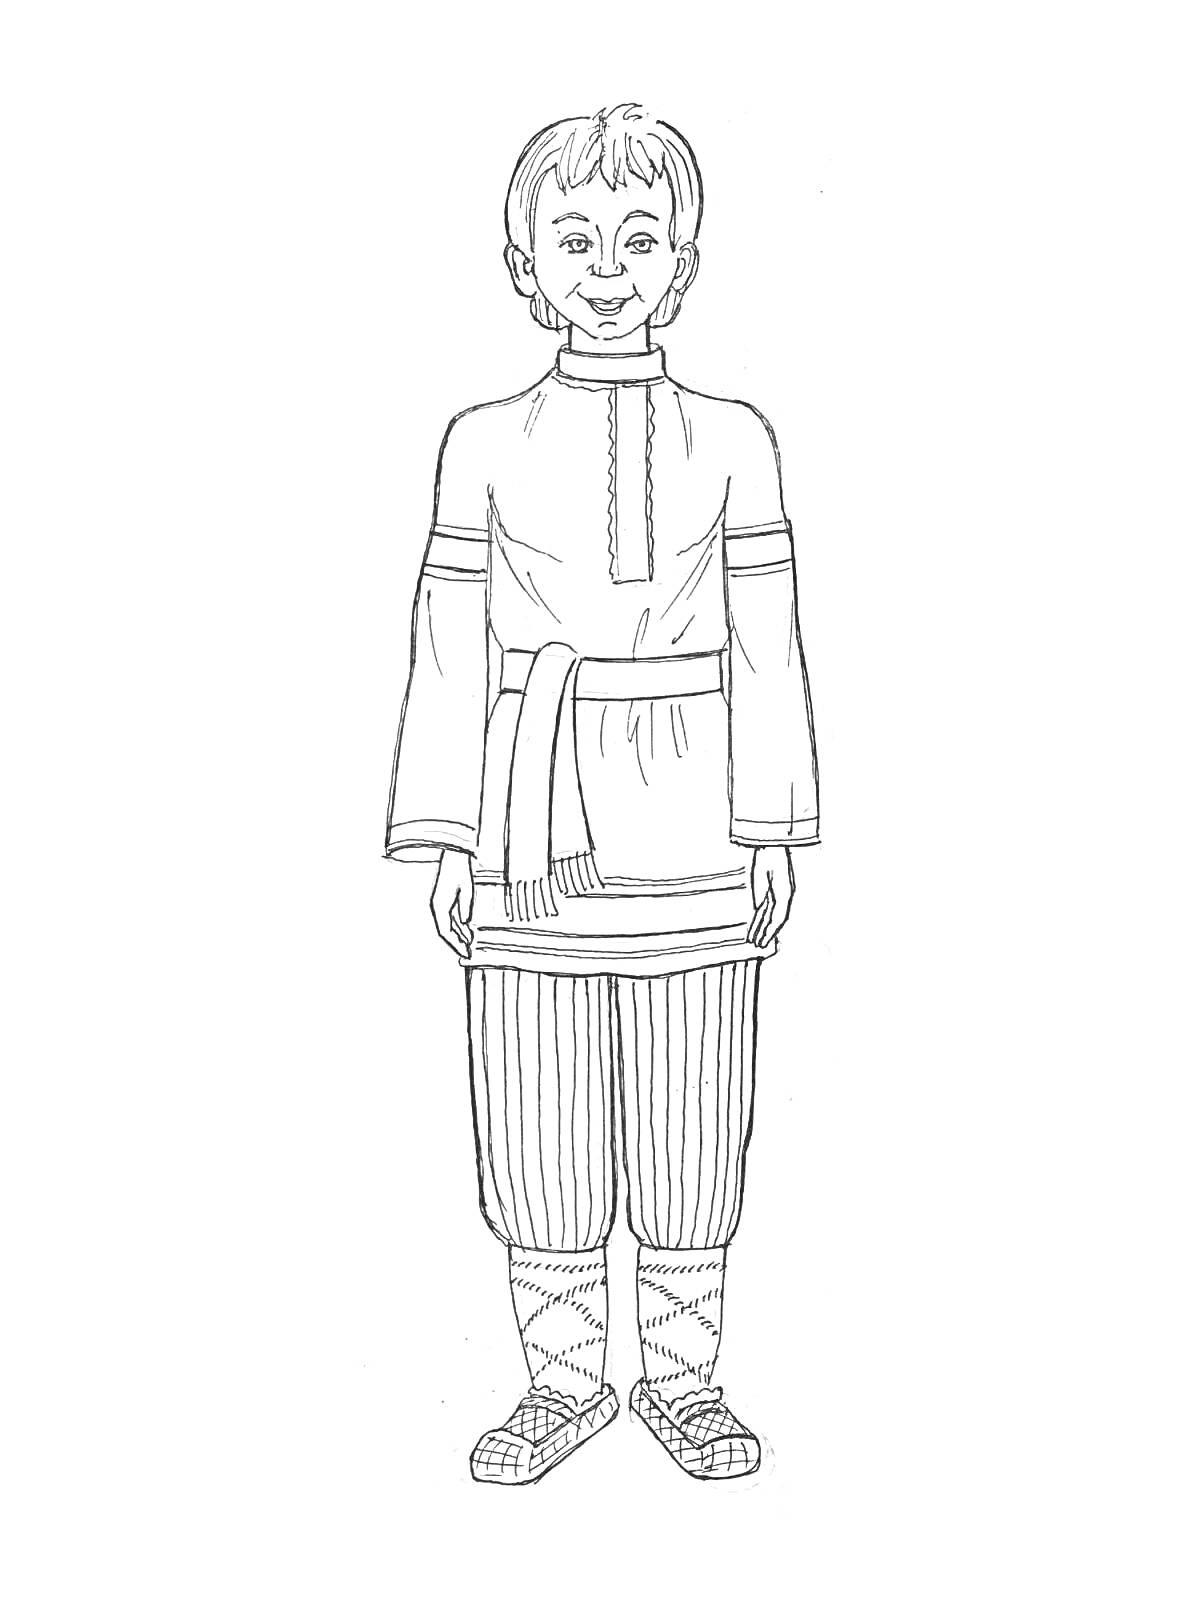 Раскраска Мальчик в русском народном костюме с рубахой, поясом, штанами и лаптями